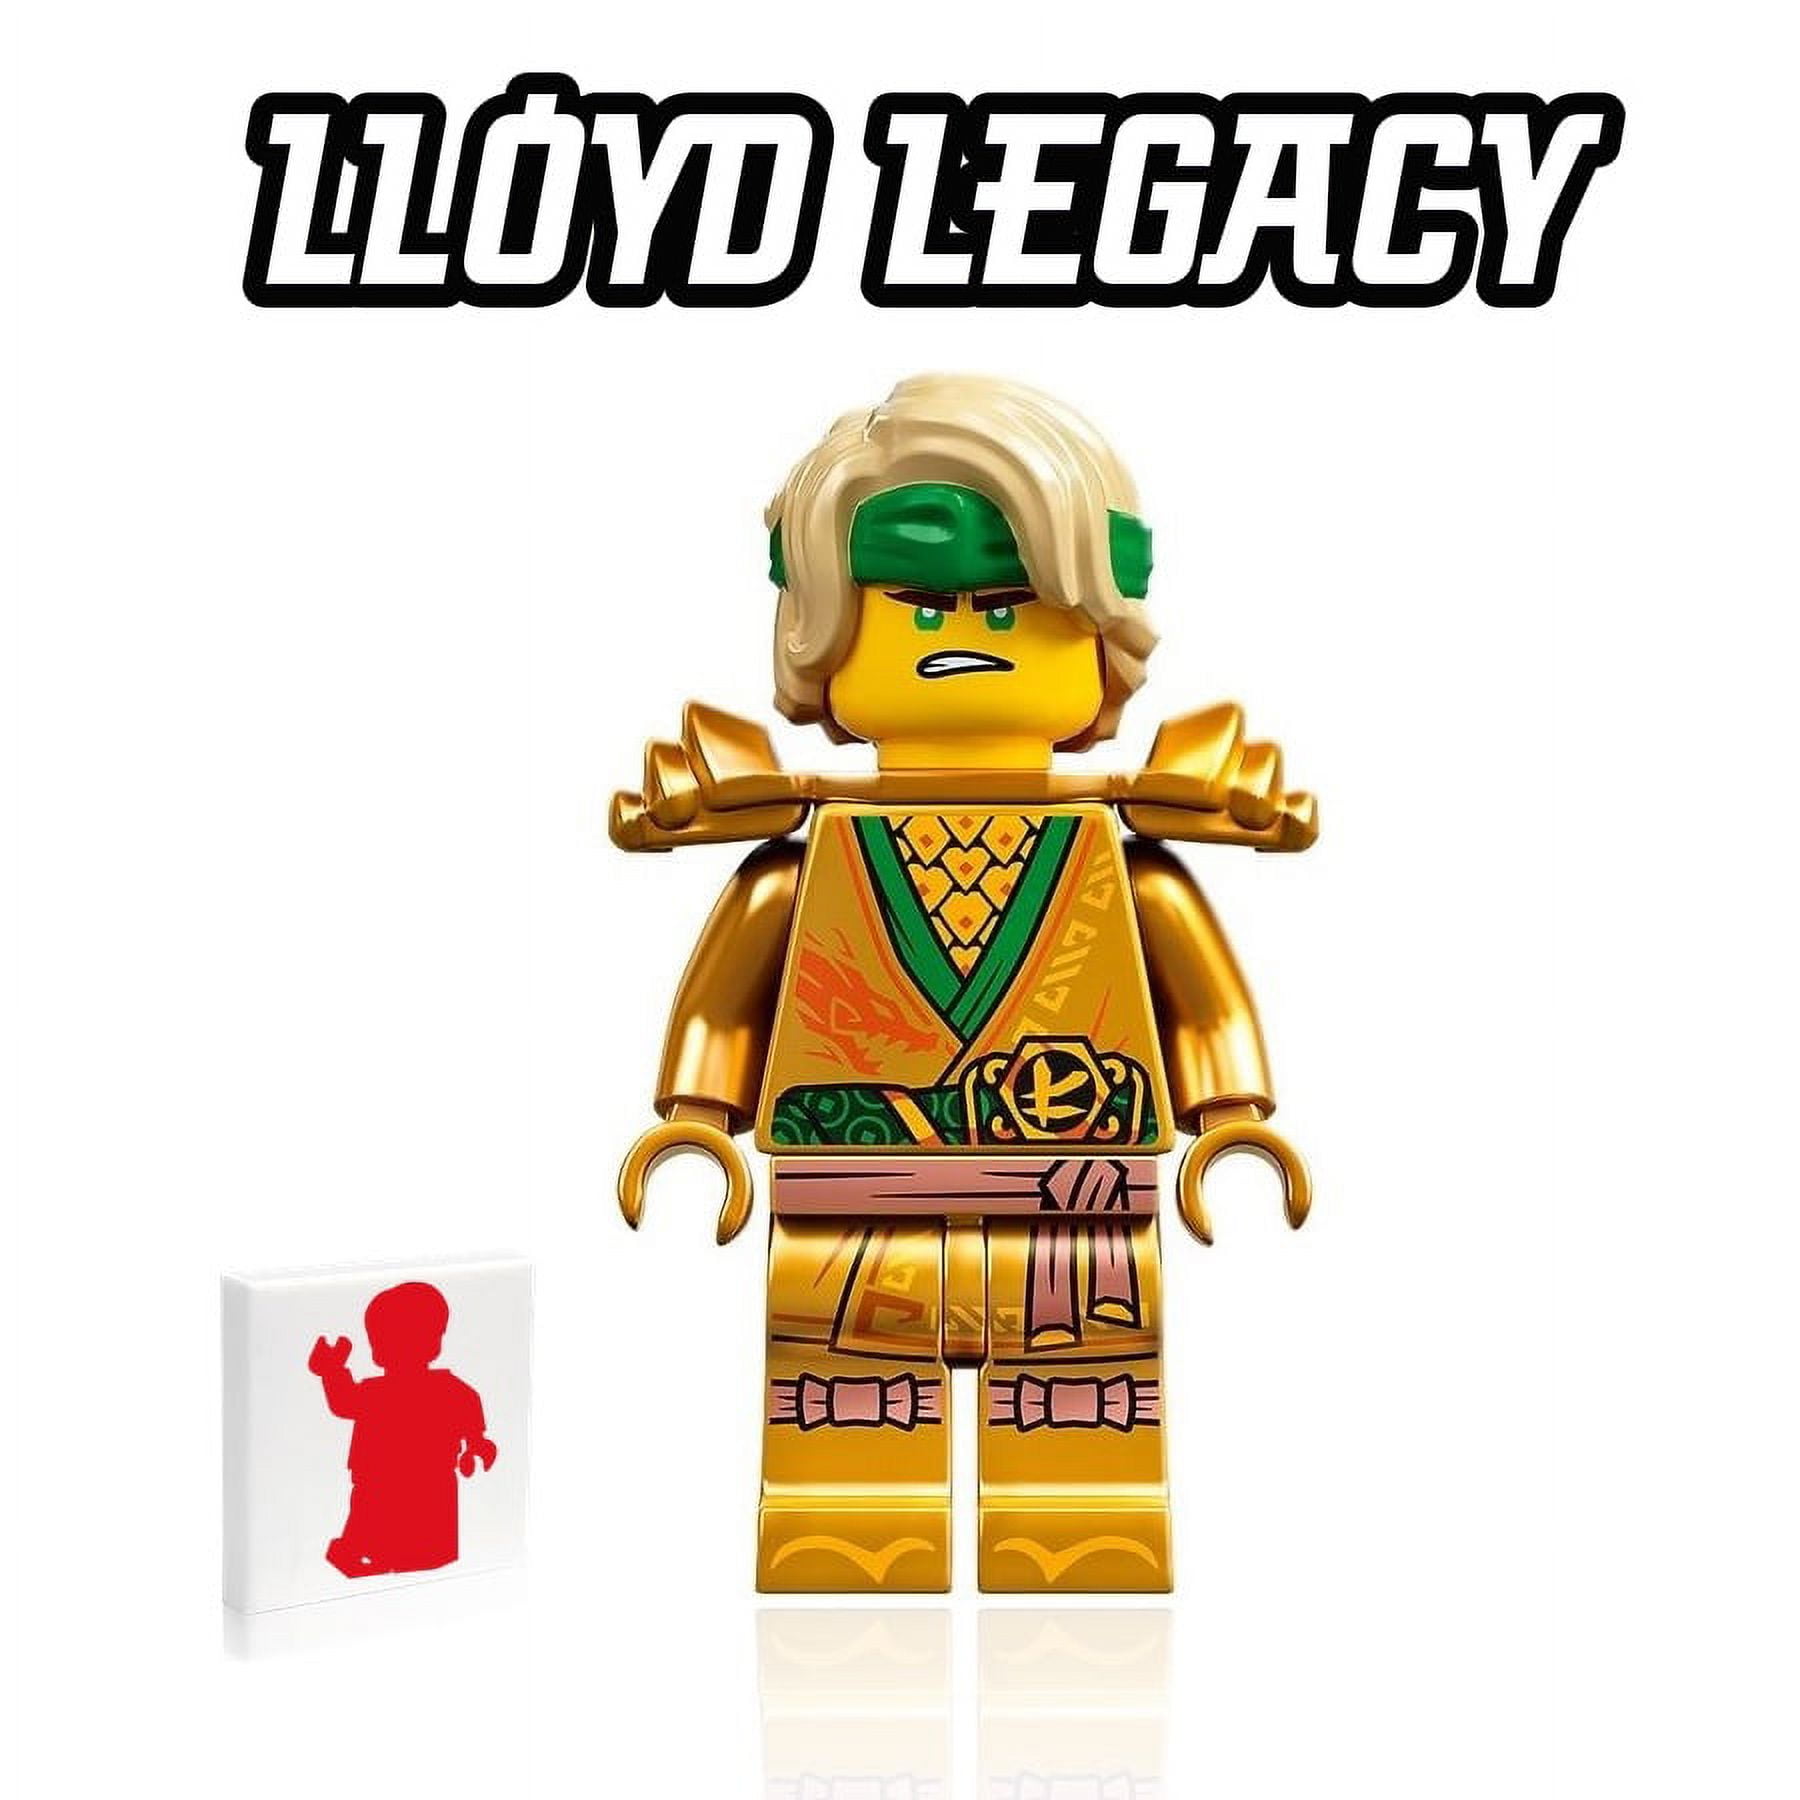 LEGO Ninjago Legacy Minifigure - ninja Lloyd with sword - Extra